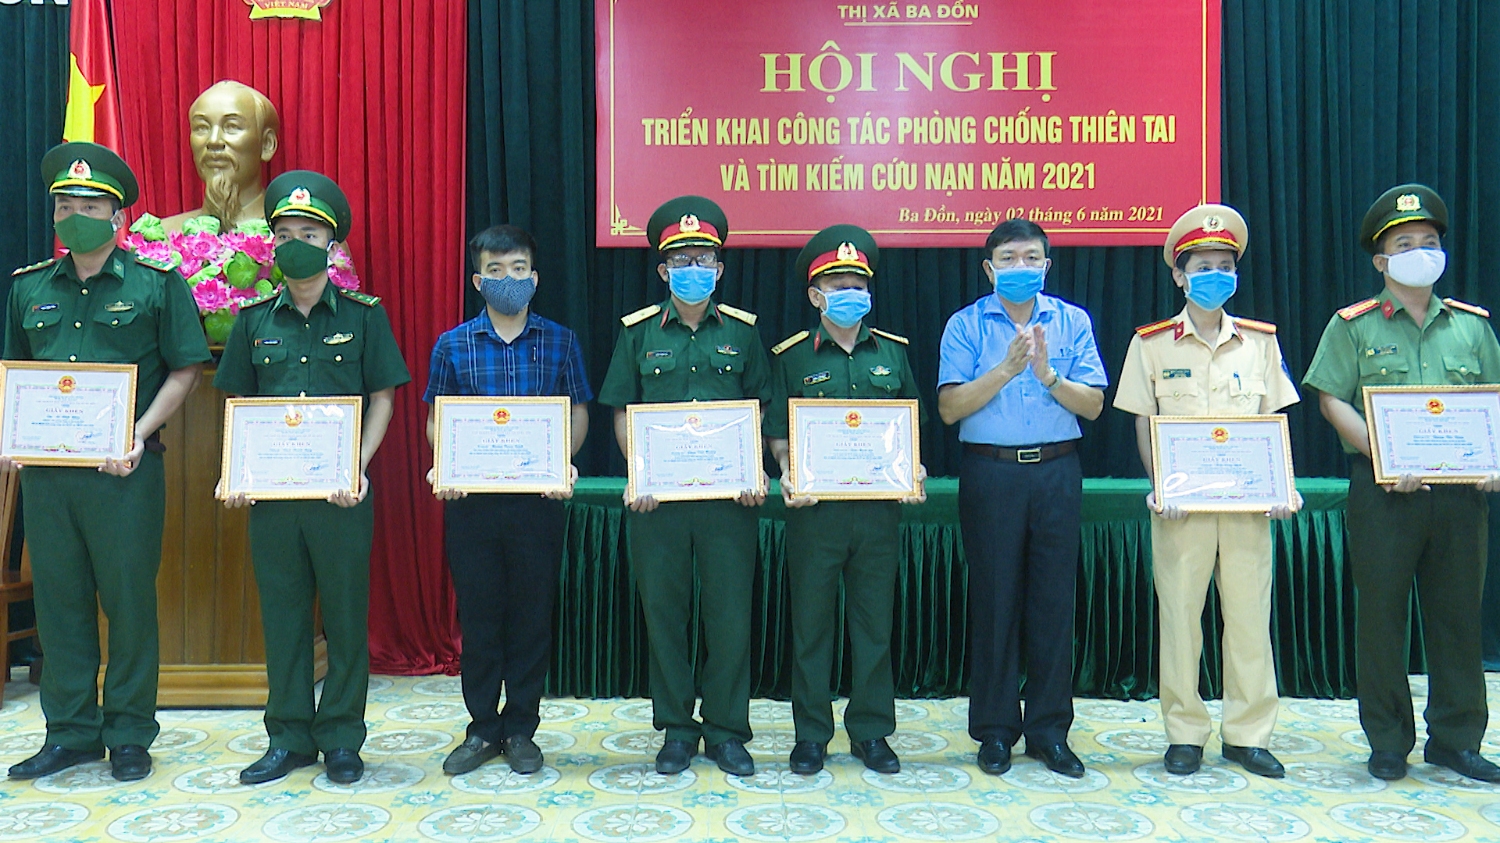 Đồng chí Đoàn Minh Thọ- Phó Bí thư Thị ủy, Chủ tịch UBND thị xã trao giấy khen cho các tập thể, cá nhân có thành tích trong công tác phòng chống thiên tai, tìm kiếm cứu nạn năm 2020.